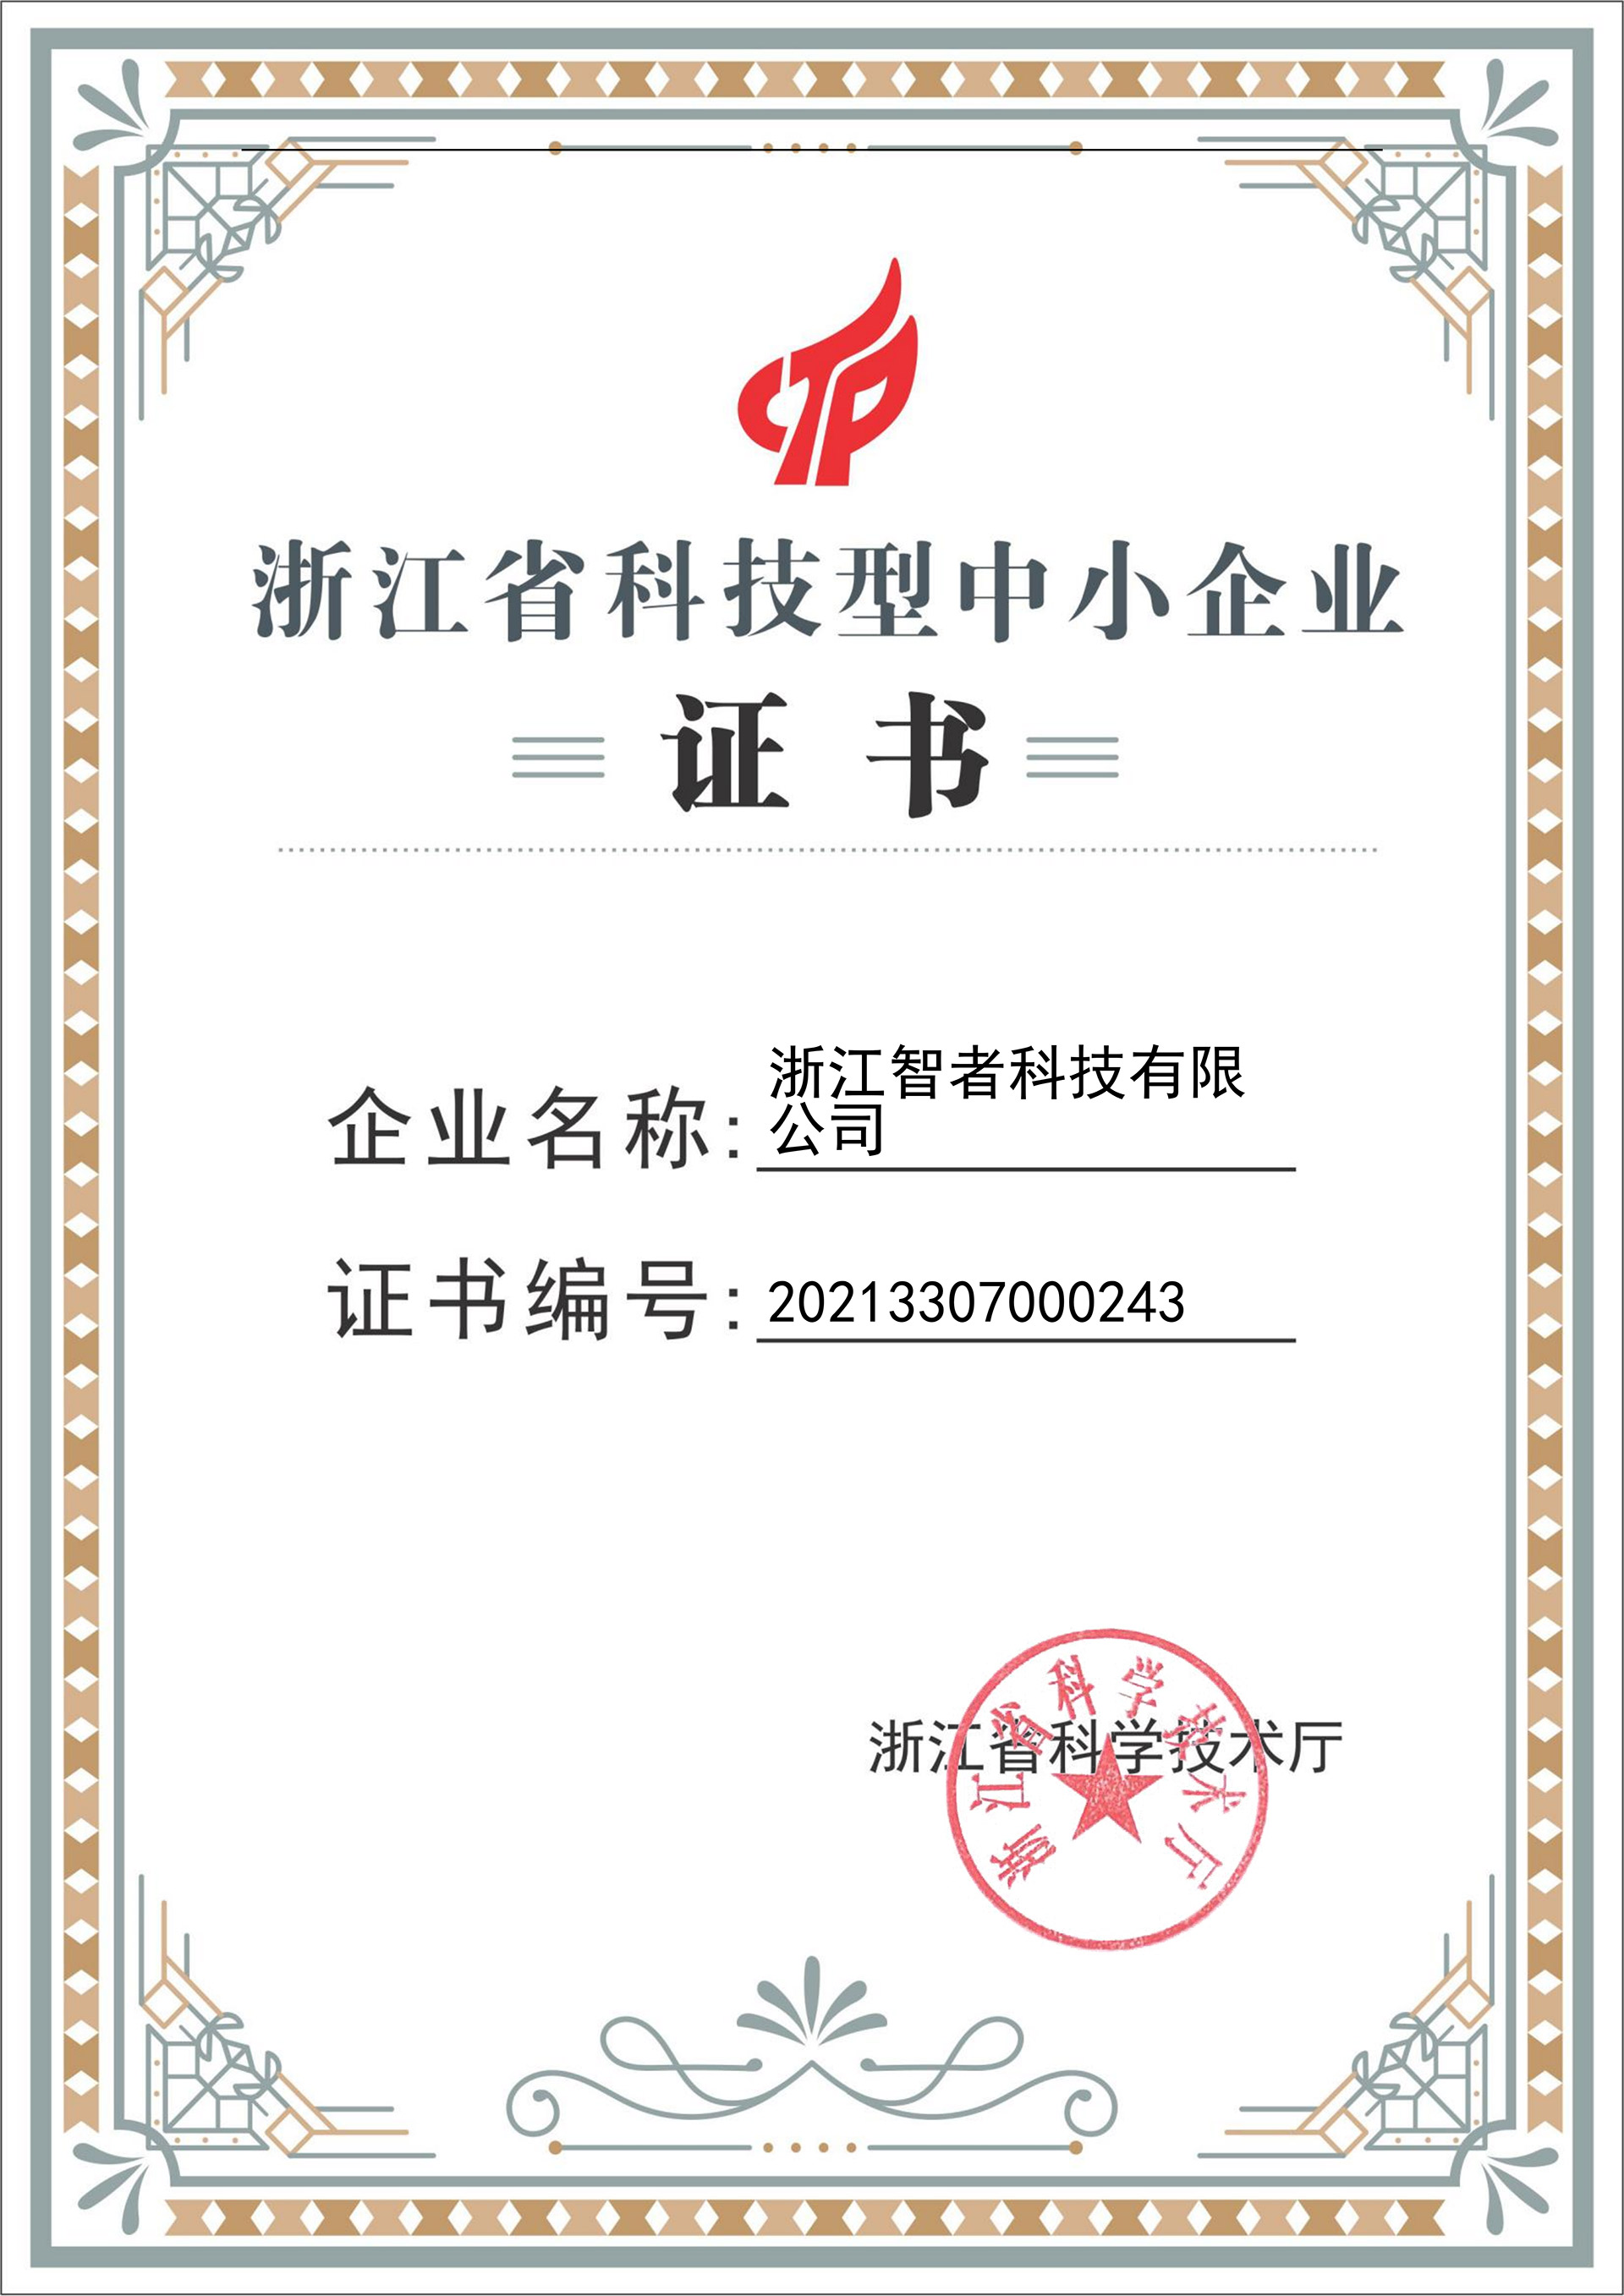 热烈祝贺我司荣获“浙江省科技型中小企业”认证证书